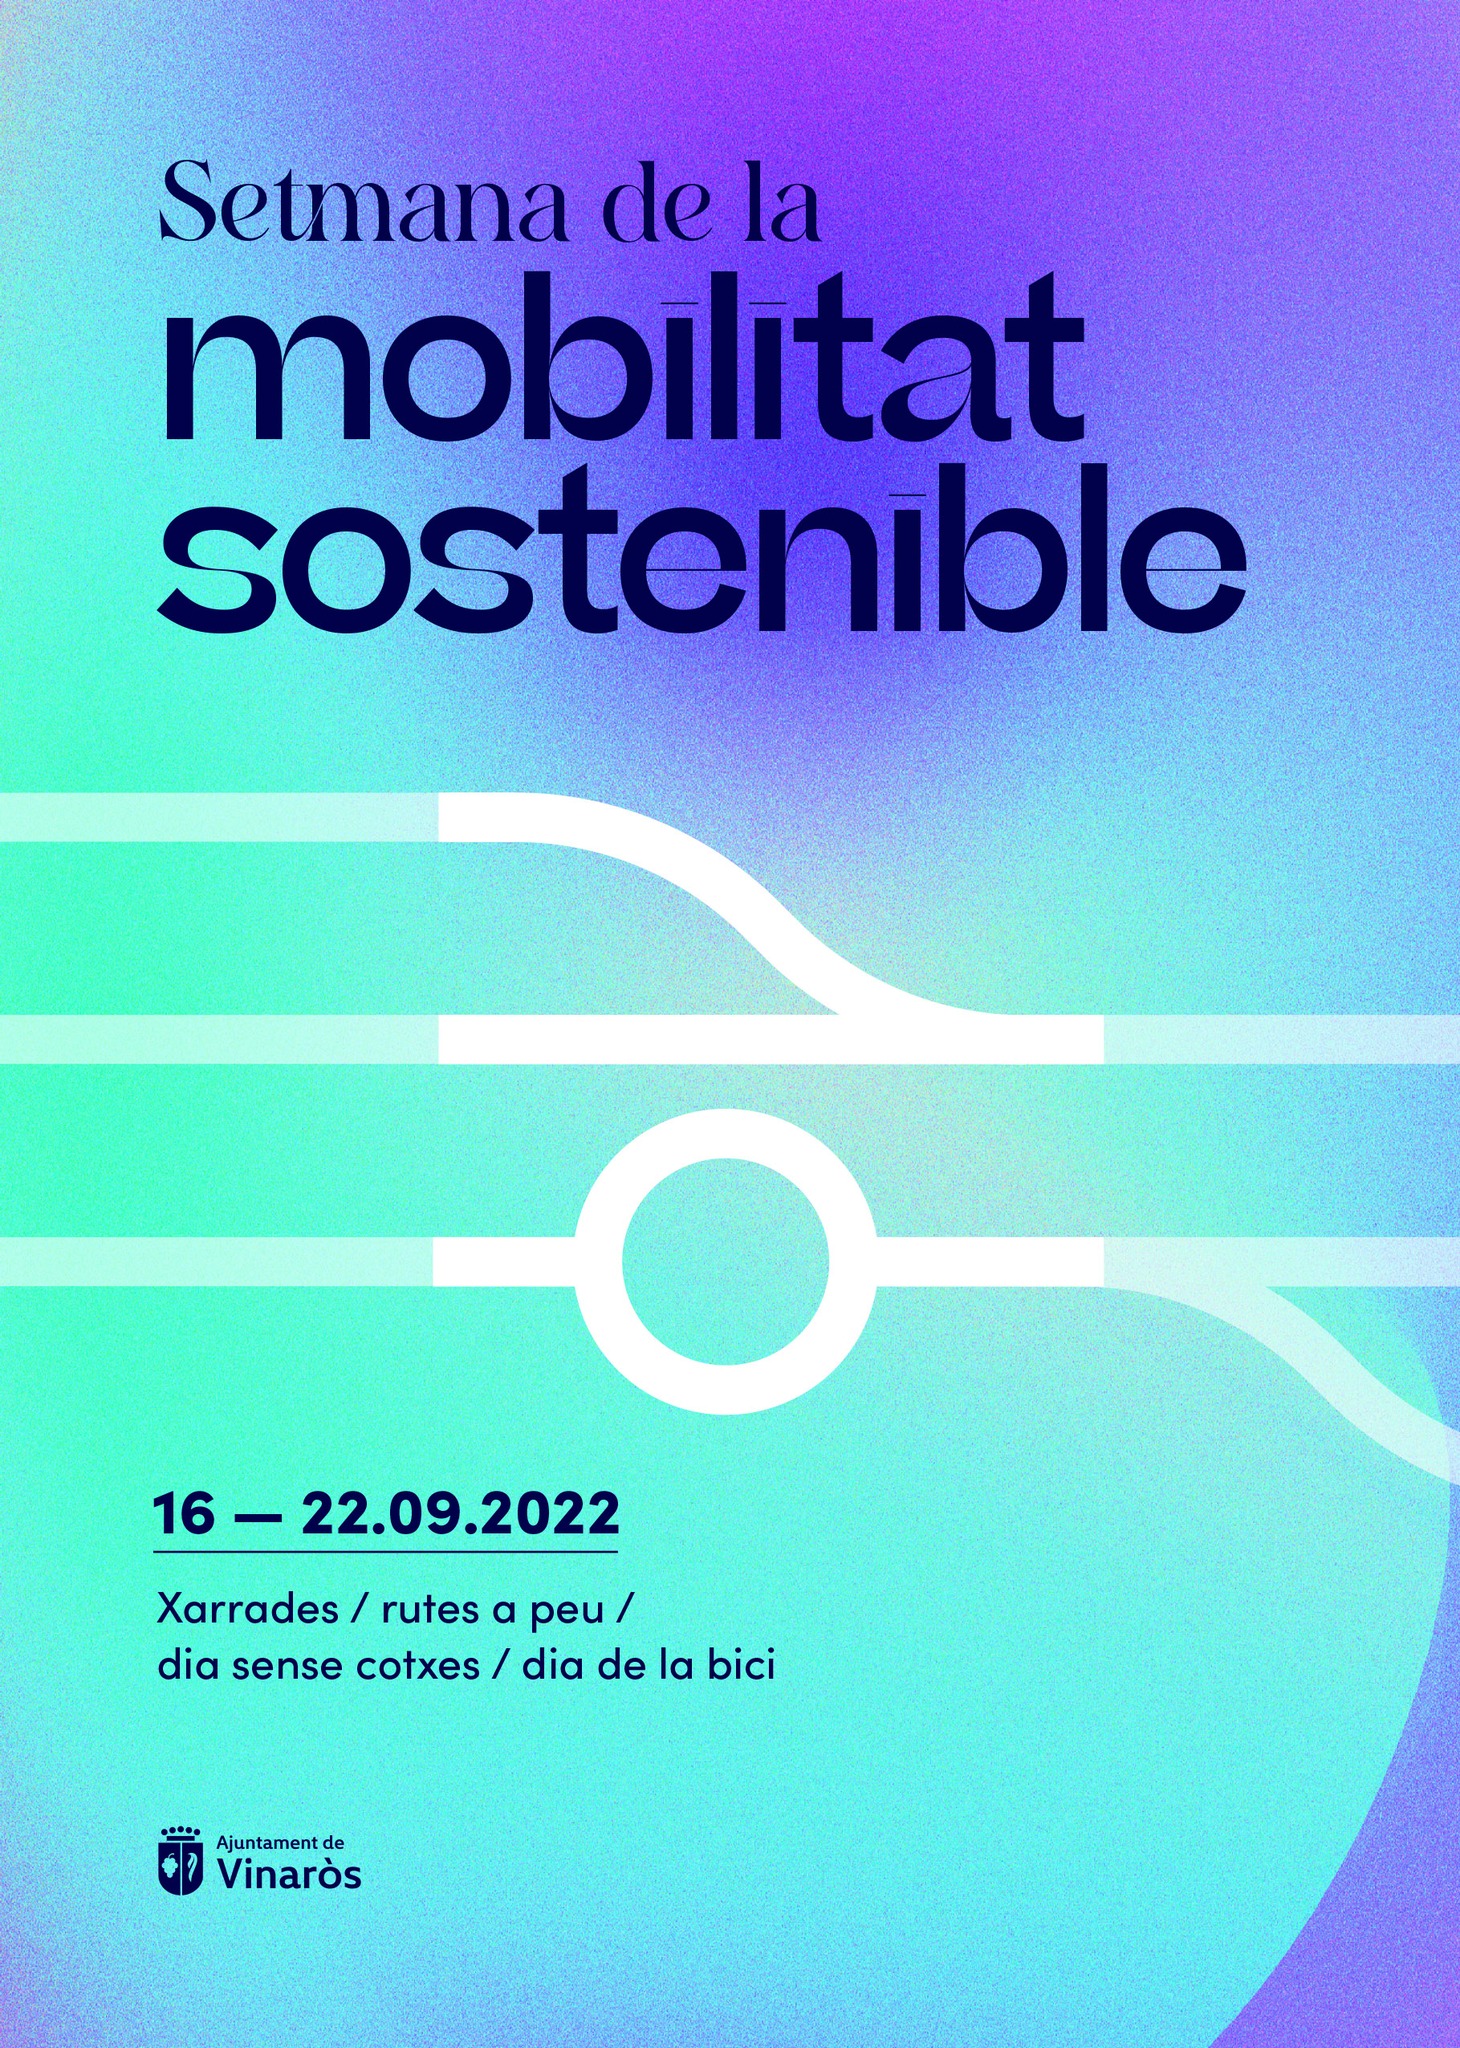 Vinaròs se adhiere en la Semana de la Movilidad Sostenible